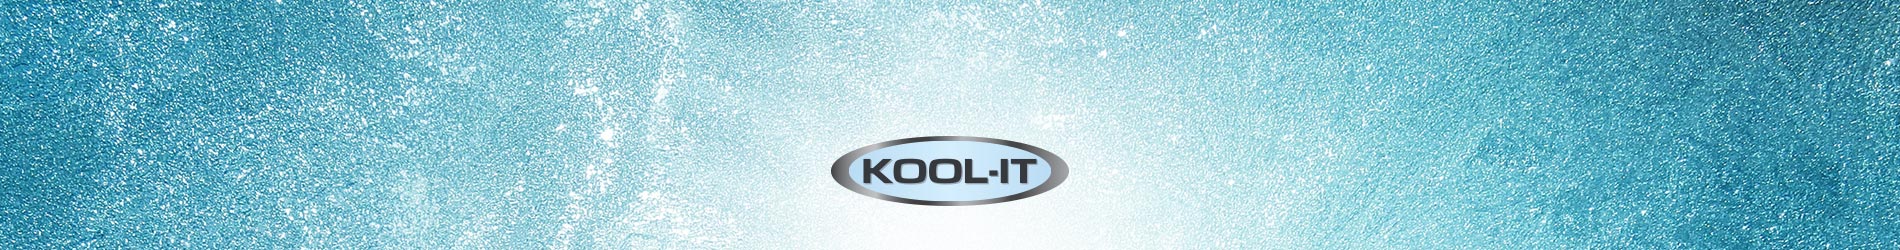 kool it products